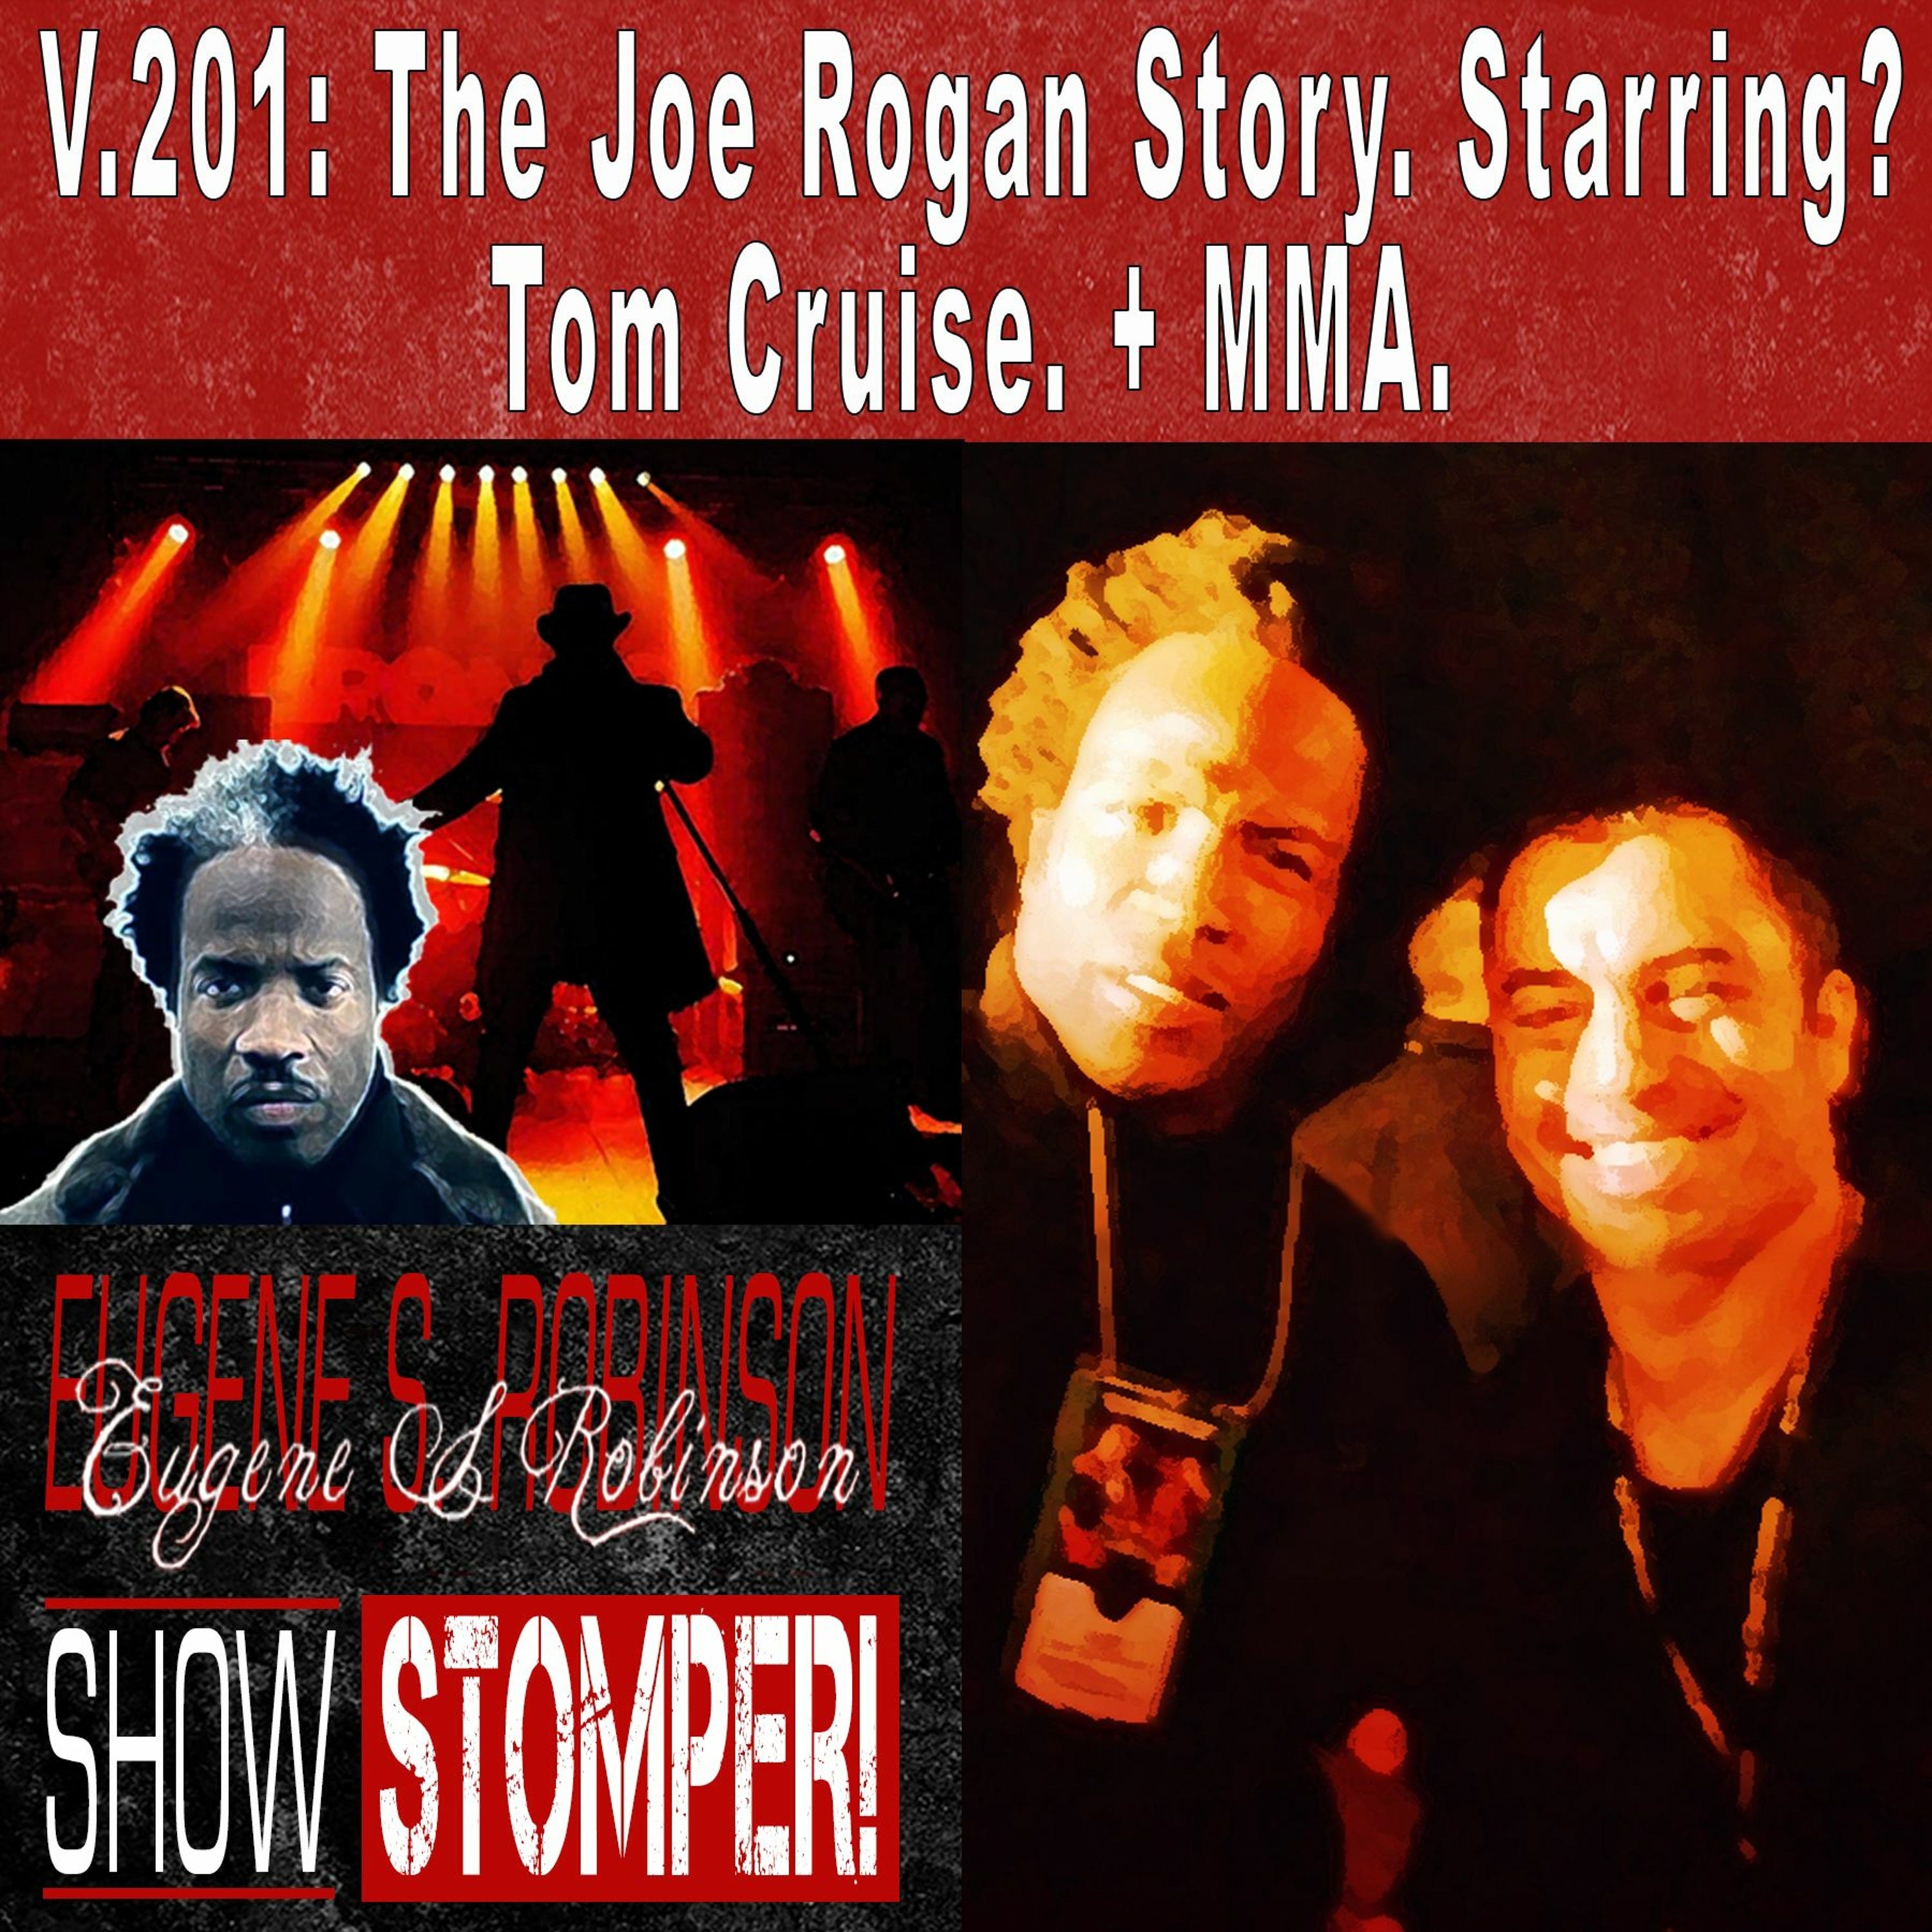 V.201 - The Joe Rogan Story. Starring Tom Cruise. MMA. On The Eugene S. Robinson Show Stomper!